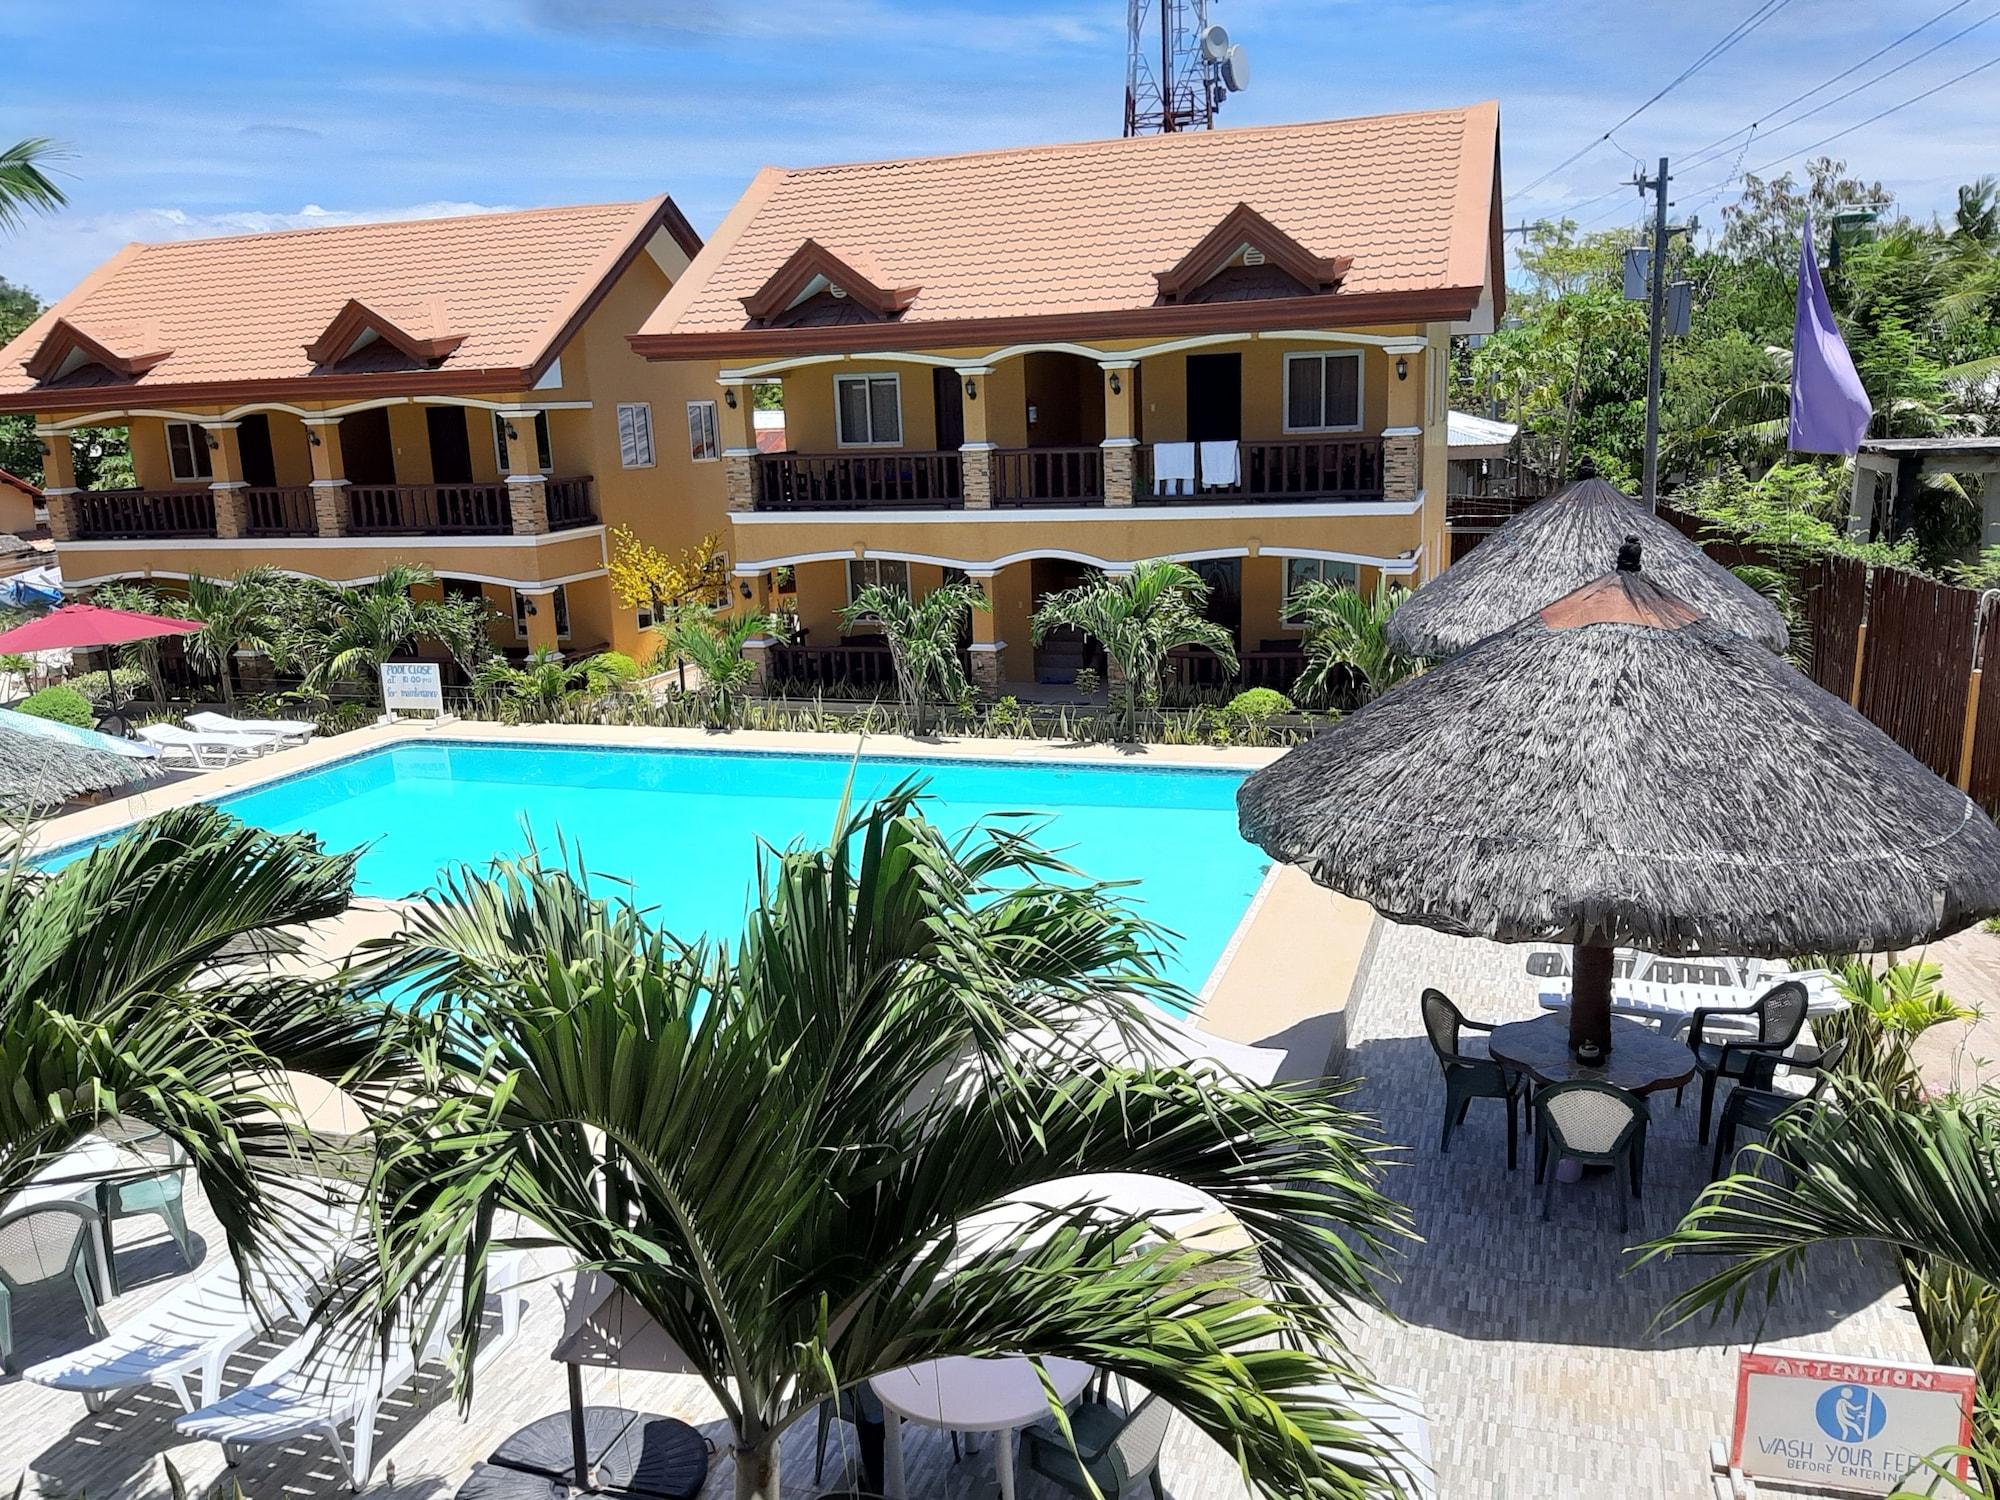 Slam'S Garden Dive Resort Isola di Malapascua Esterno foto